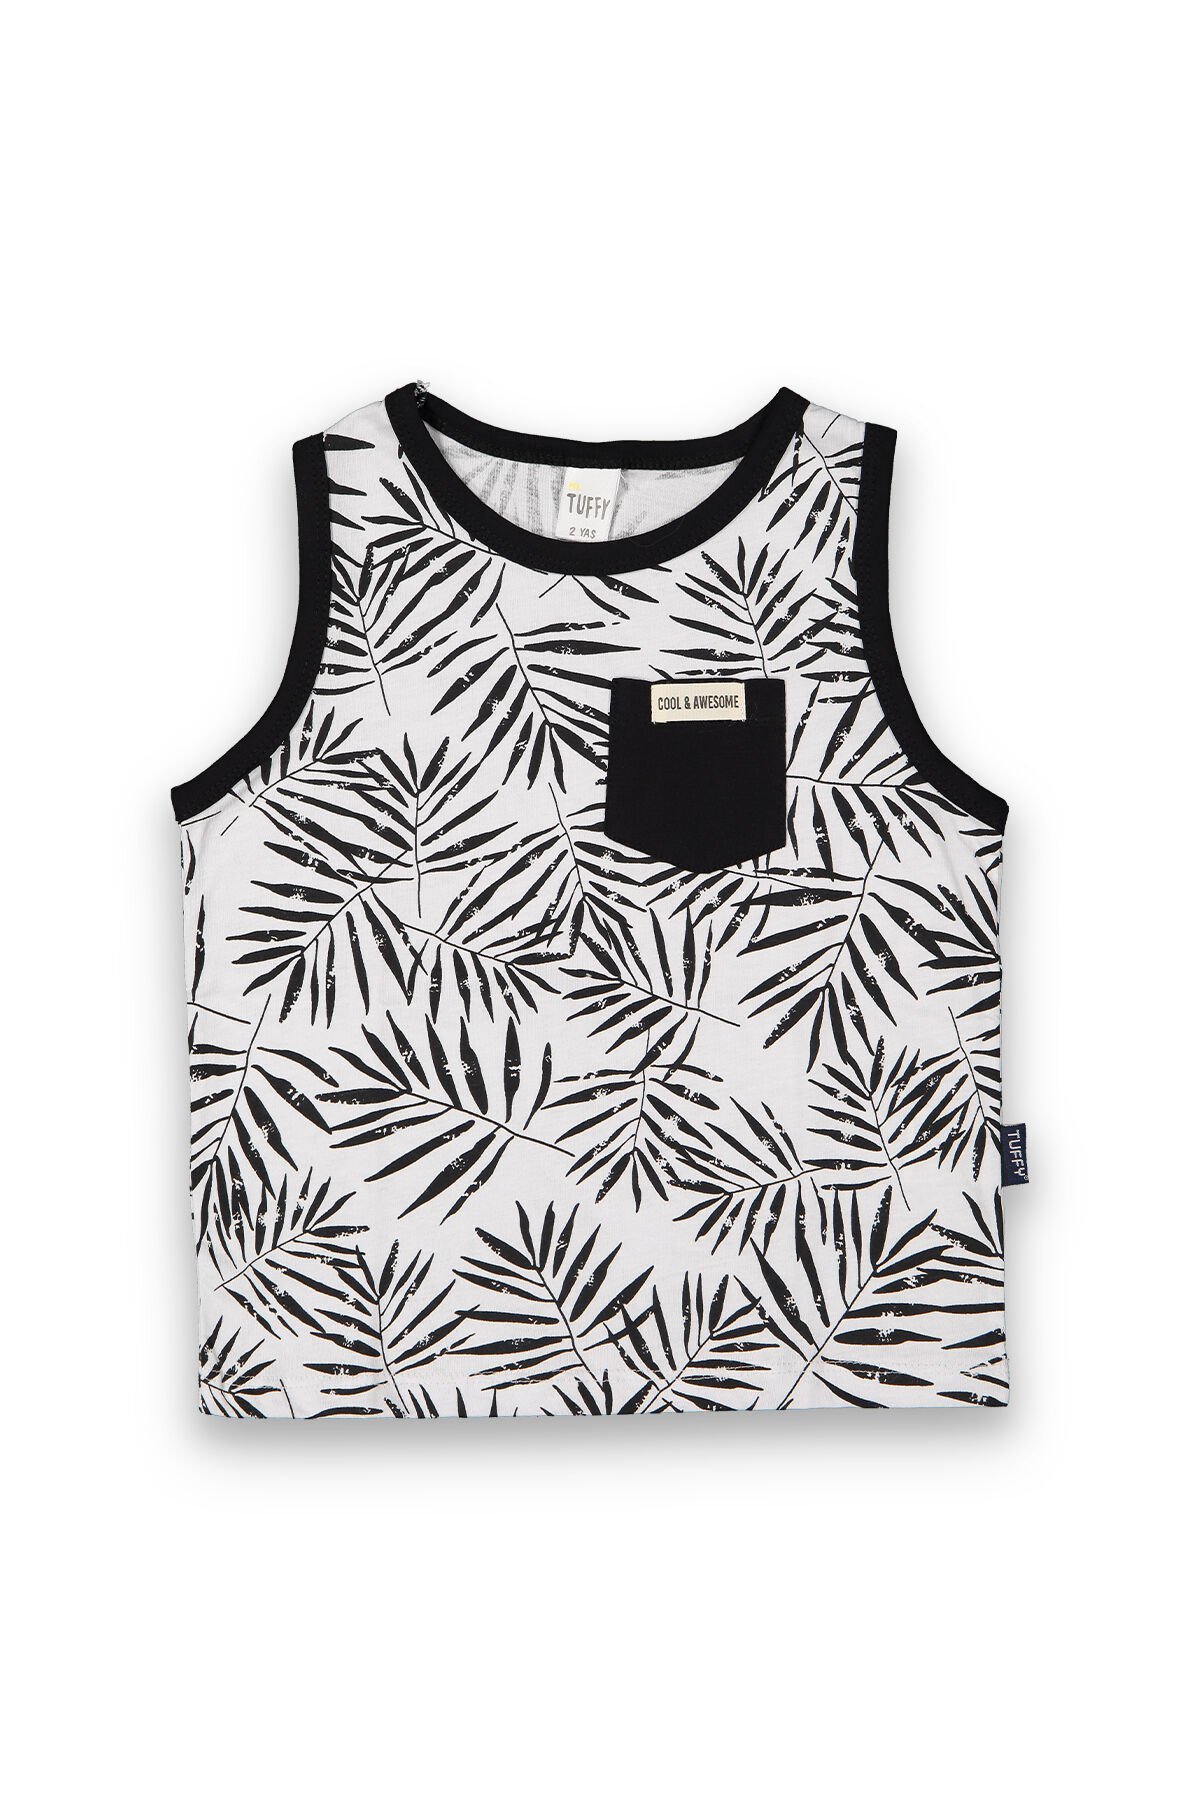 Tuffy Palmiye Detaylı Cepli Erkek Çocuk Askılı T-Shirt-8081